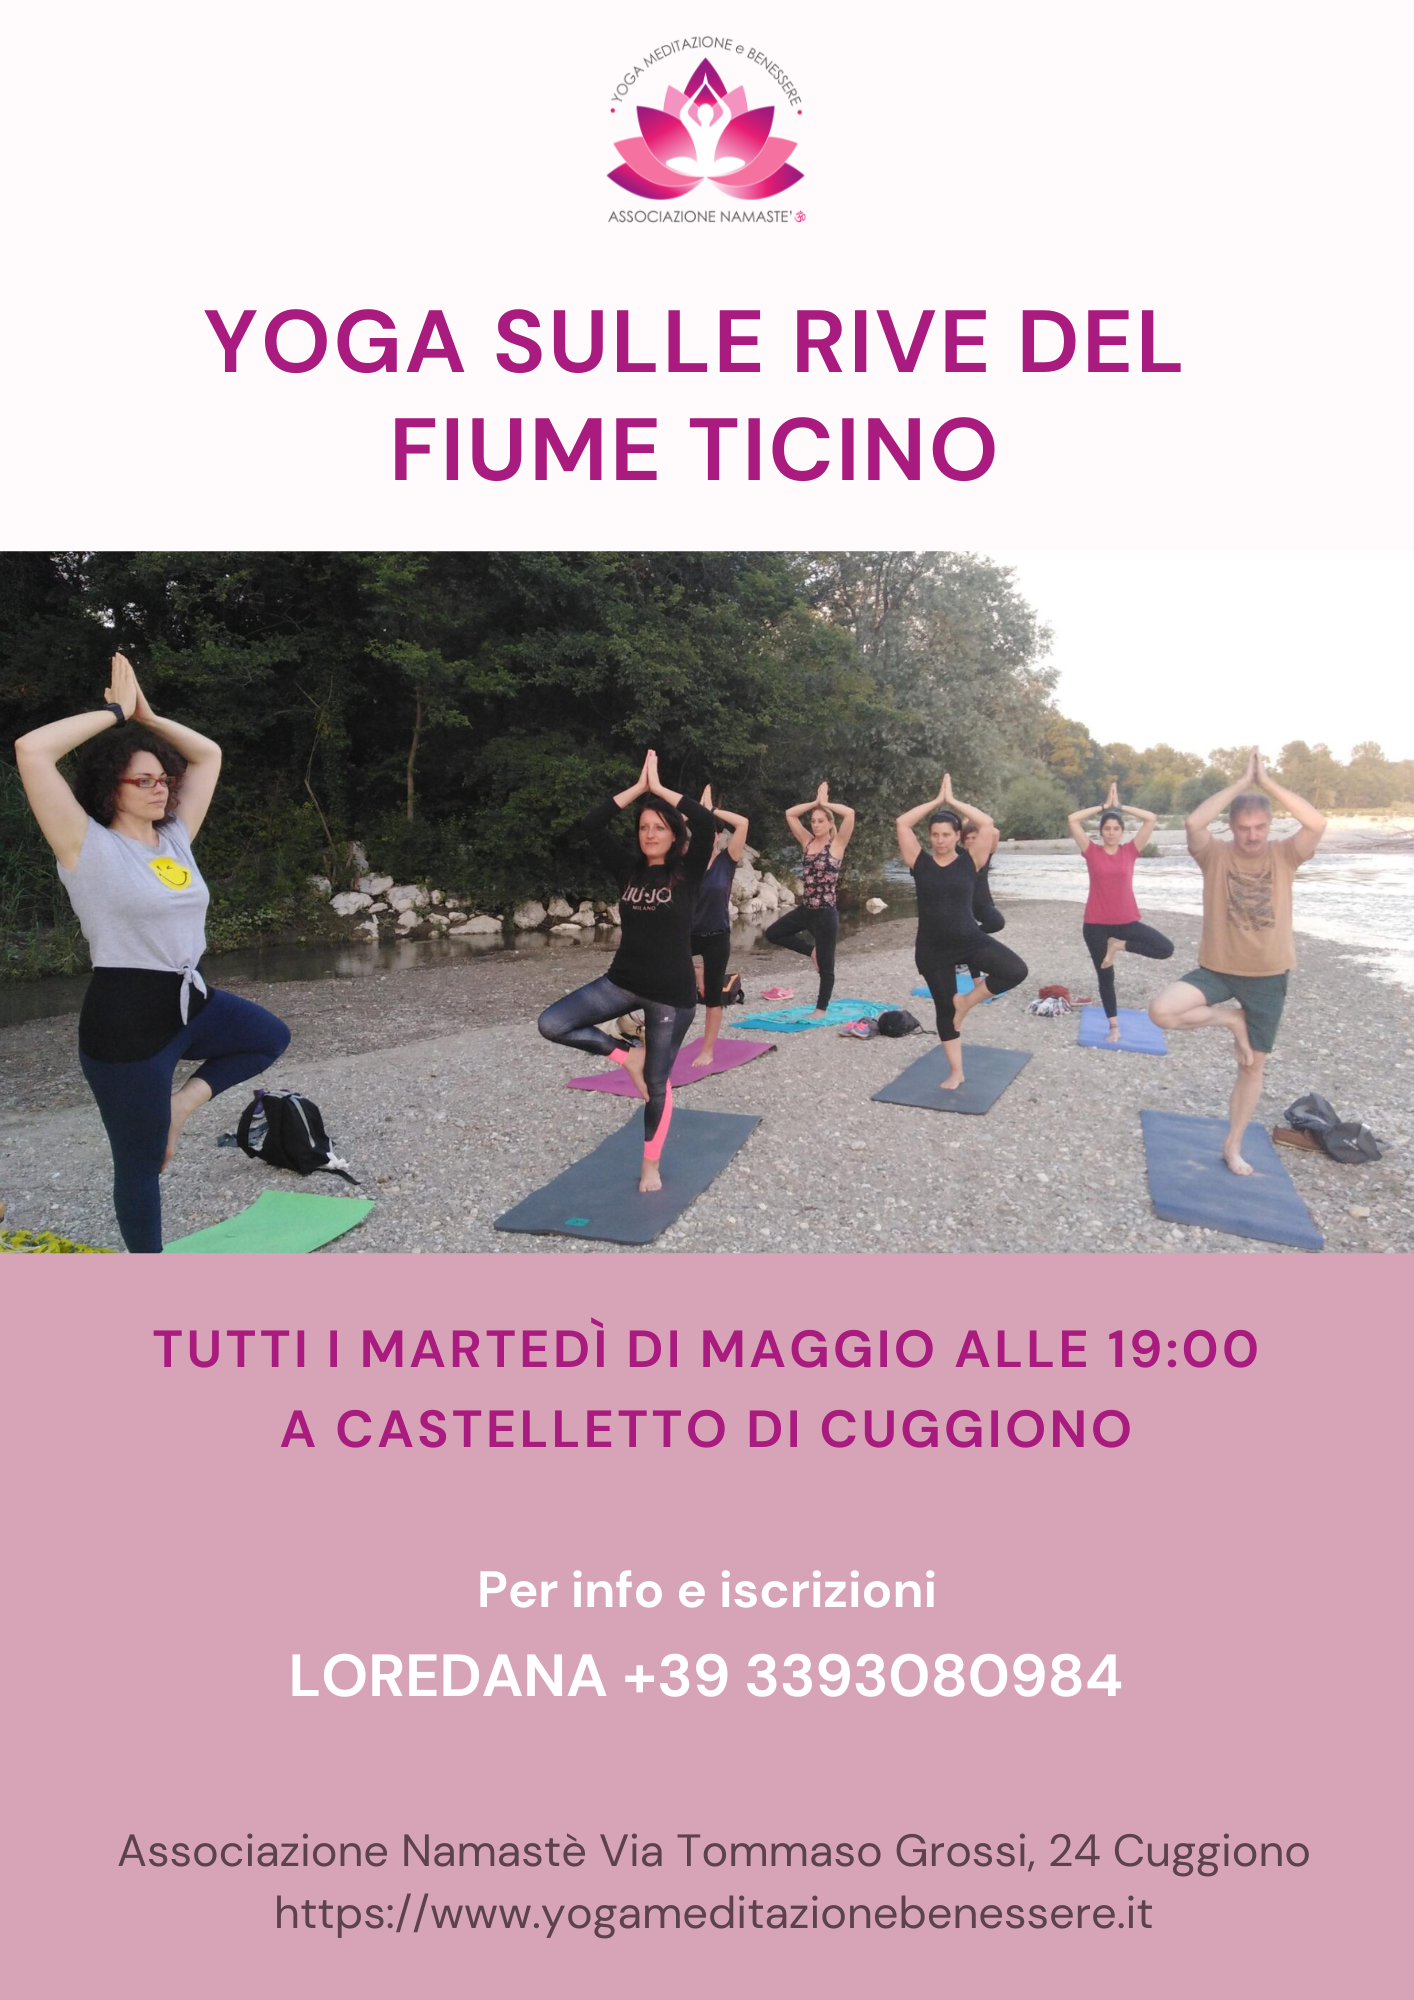 Yoga sulle rive del fiume Ticino